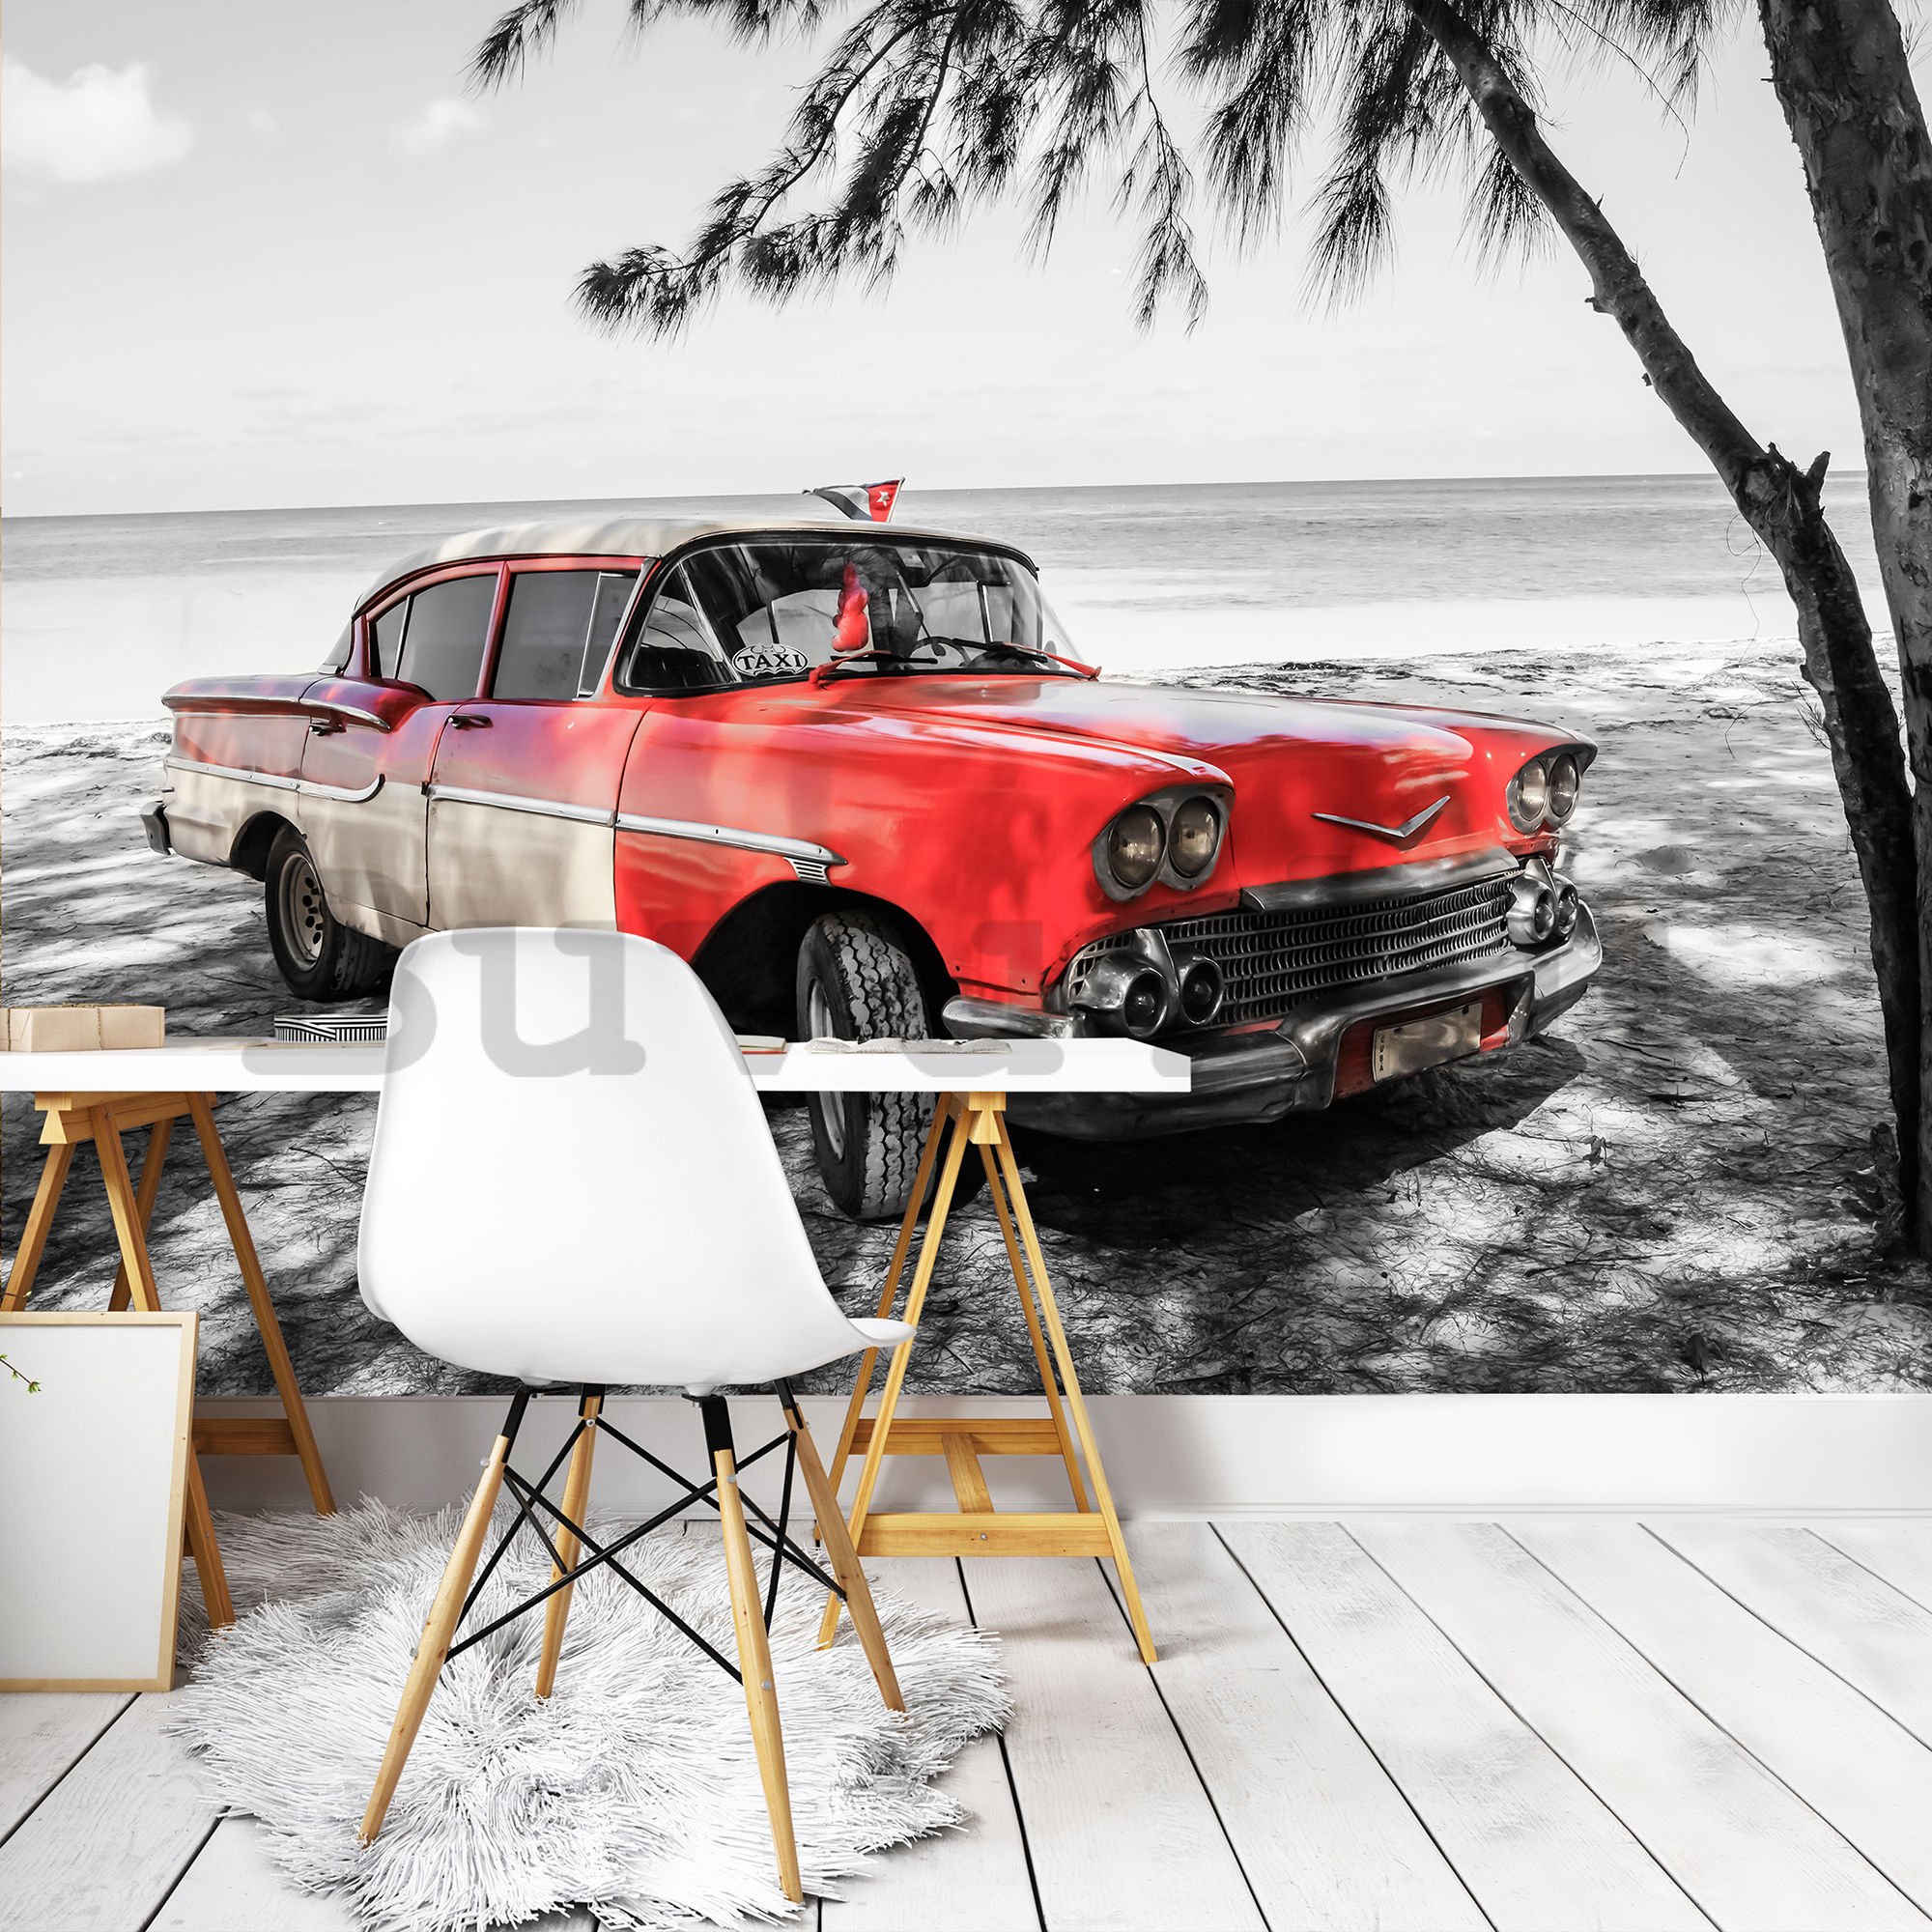 Vlies fotótapéta: Kuba piros autó a tenger mellett - 254x368 cm